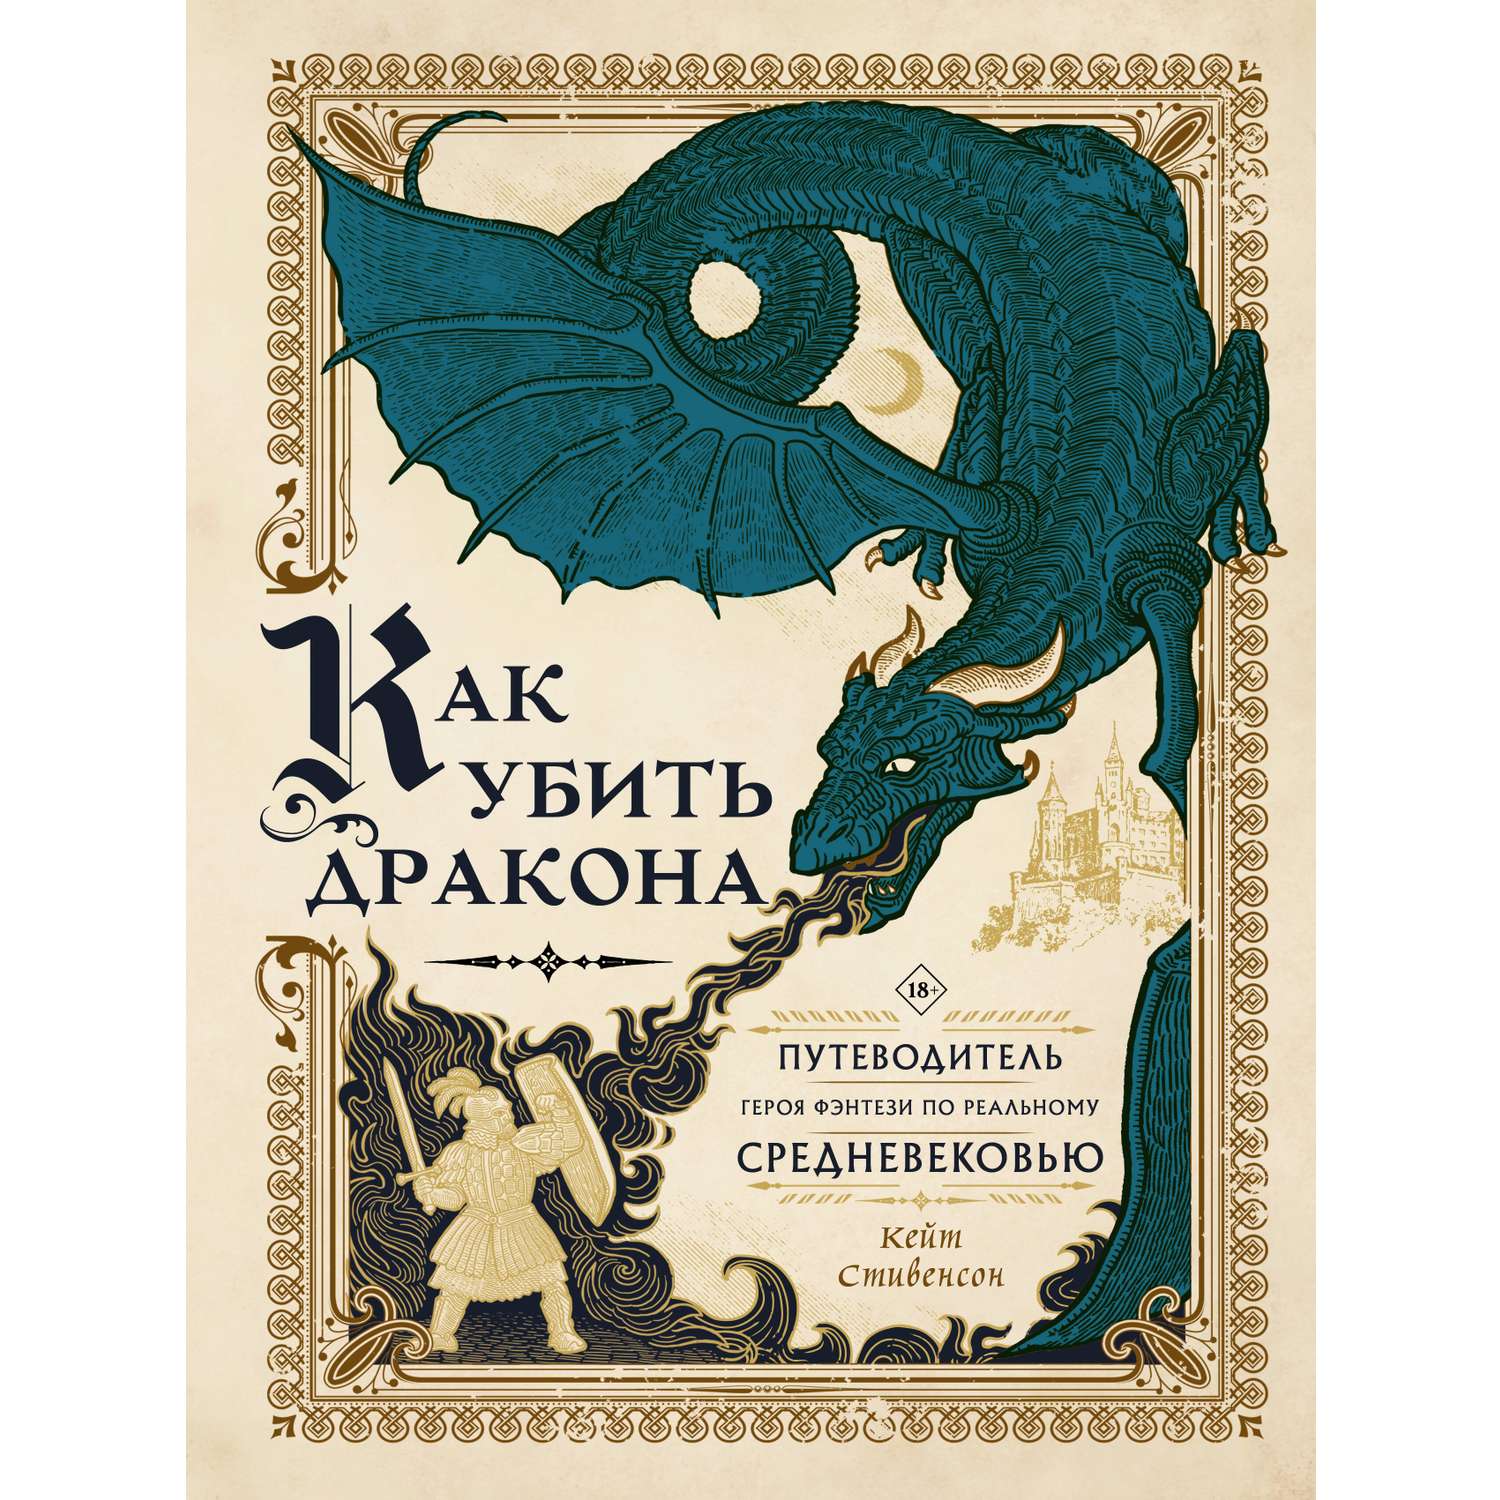 Книга АСТ Как убить дракона: Путеводитель героя фэнтези по реальному Средневековью - фото 1